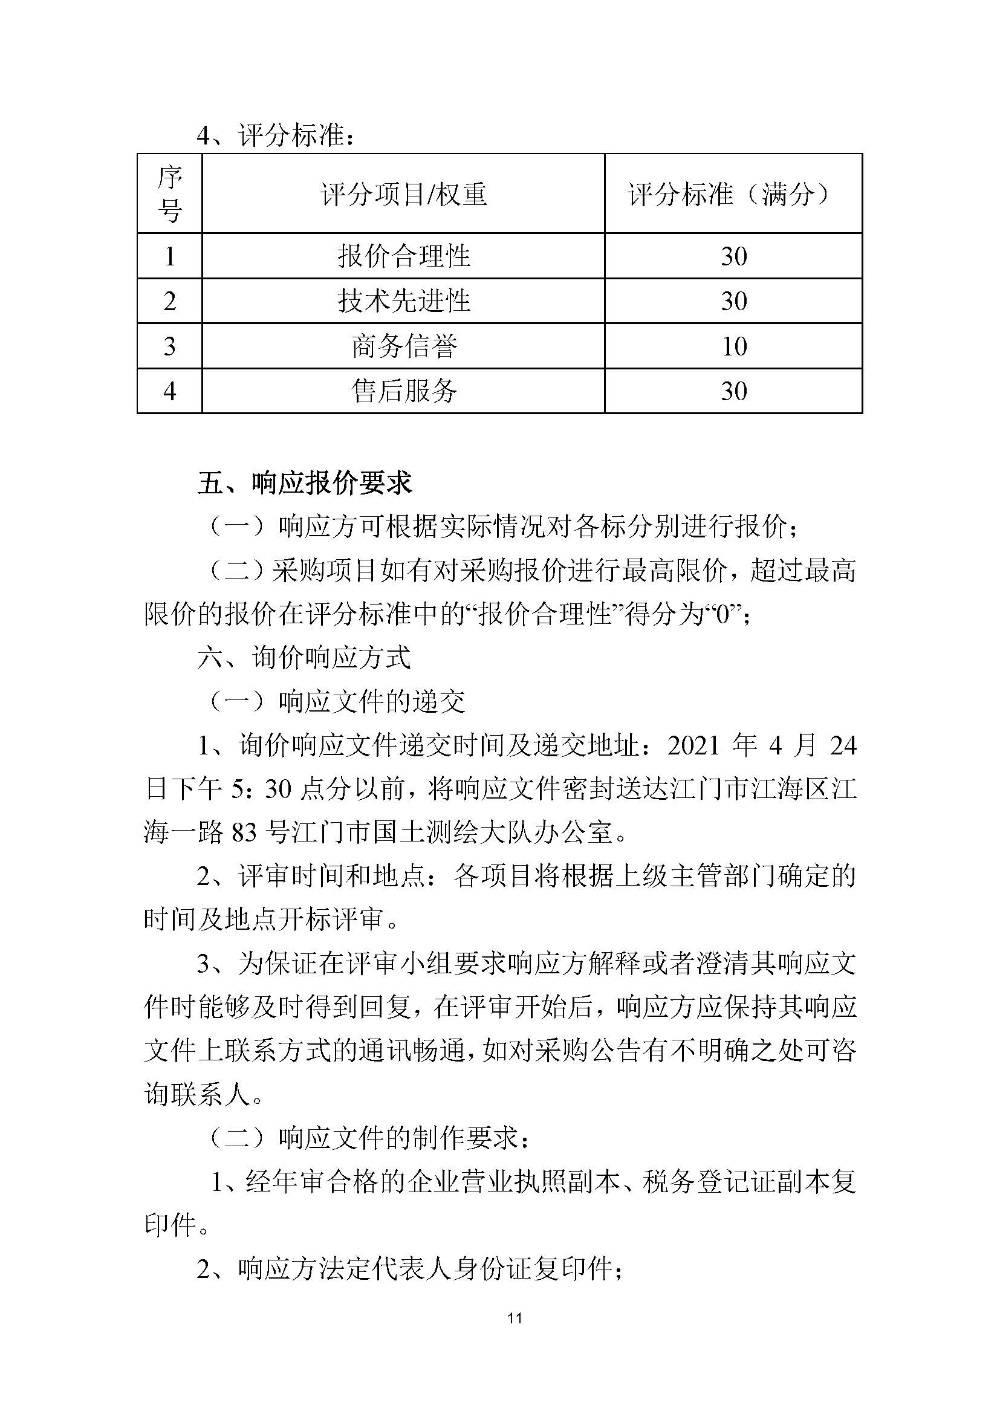 210420江门市国土测绘大队采购计算机设备维修和保养服务等项目采购公告 (11).jpg